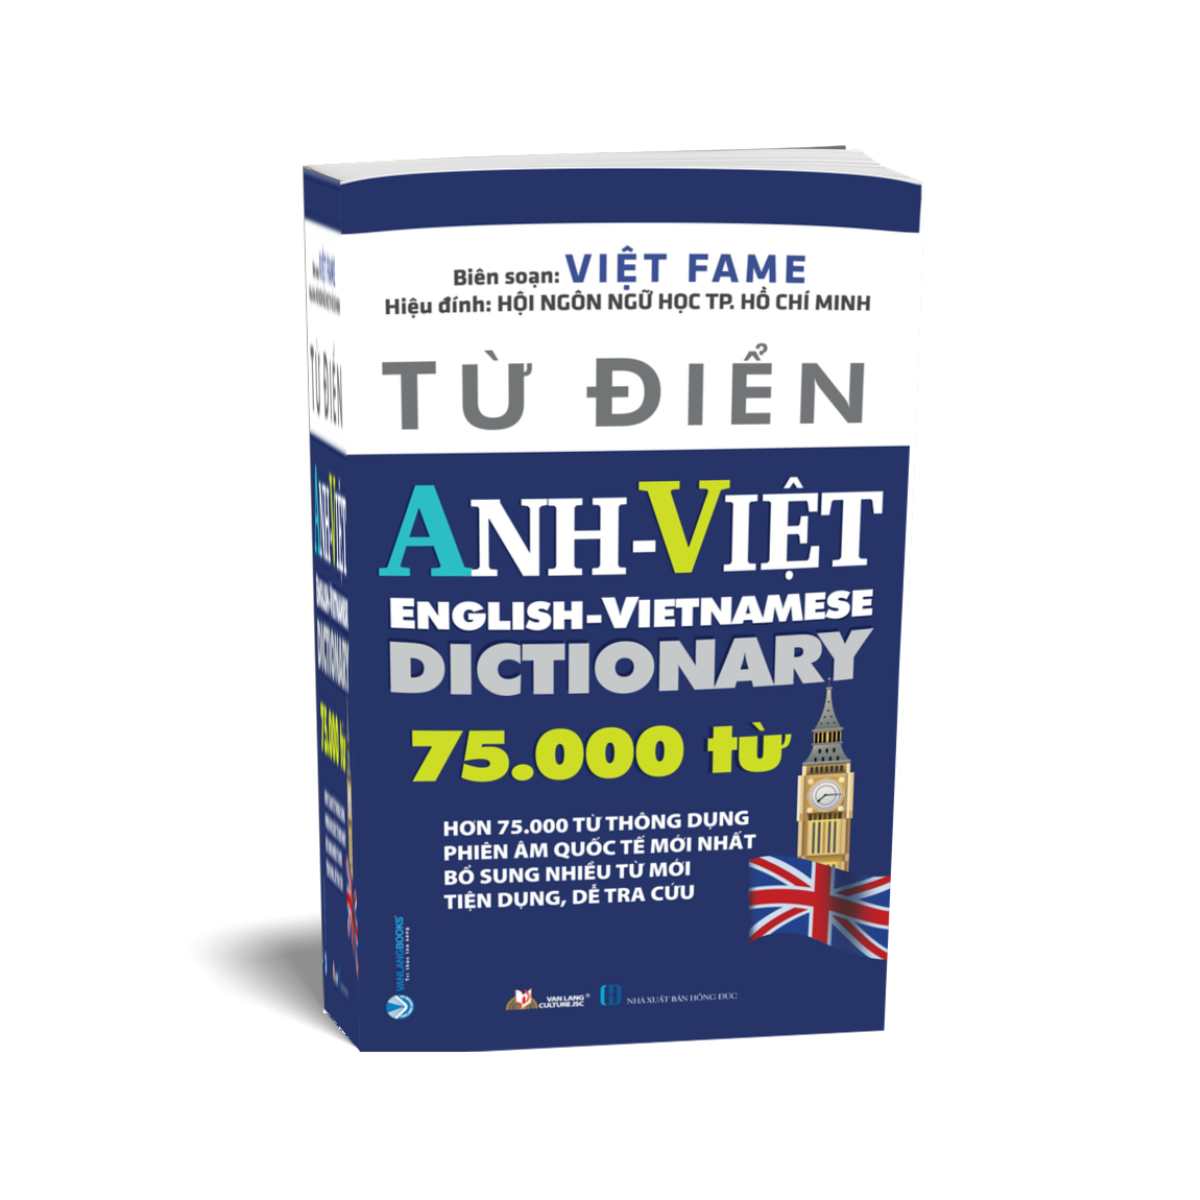 Từ Điển Anh - Việt 75.000 Từ (Tái Bản)